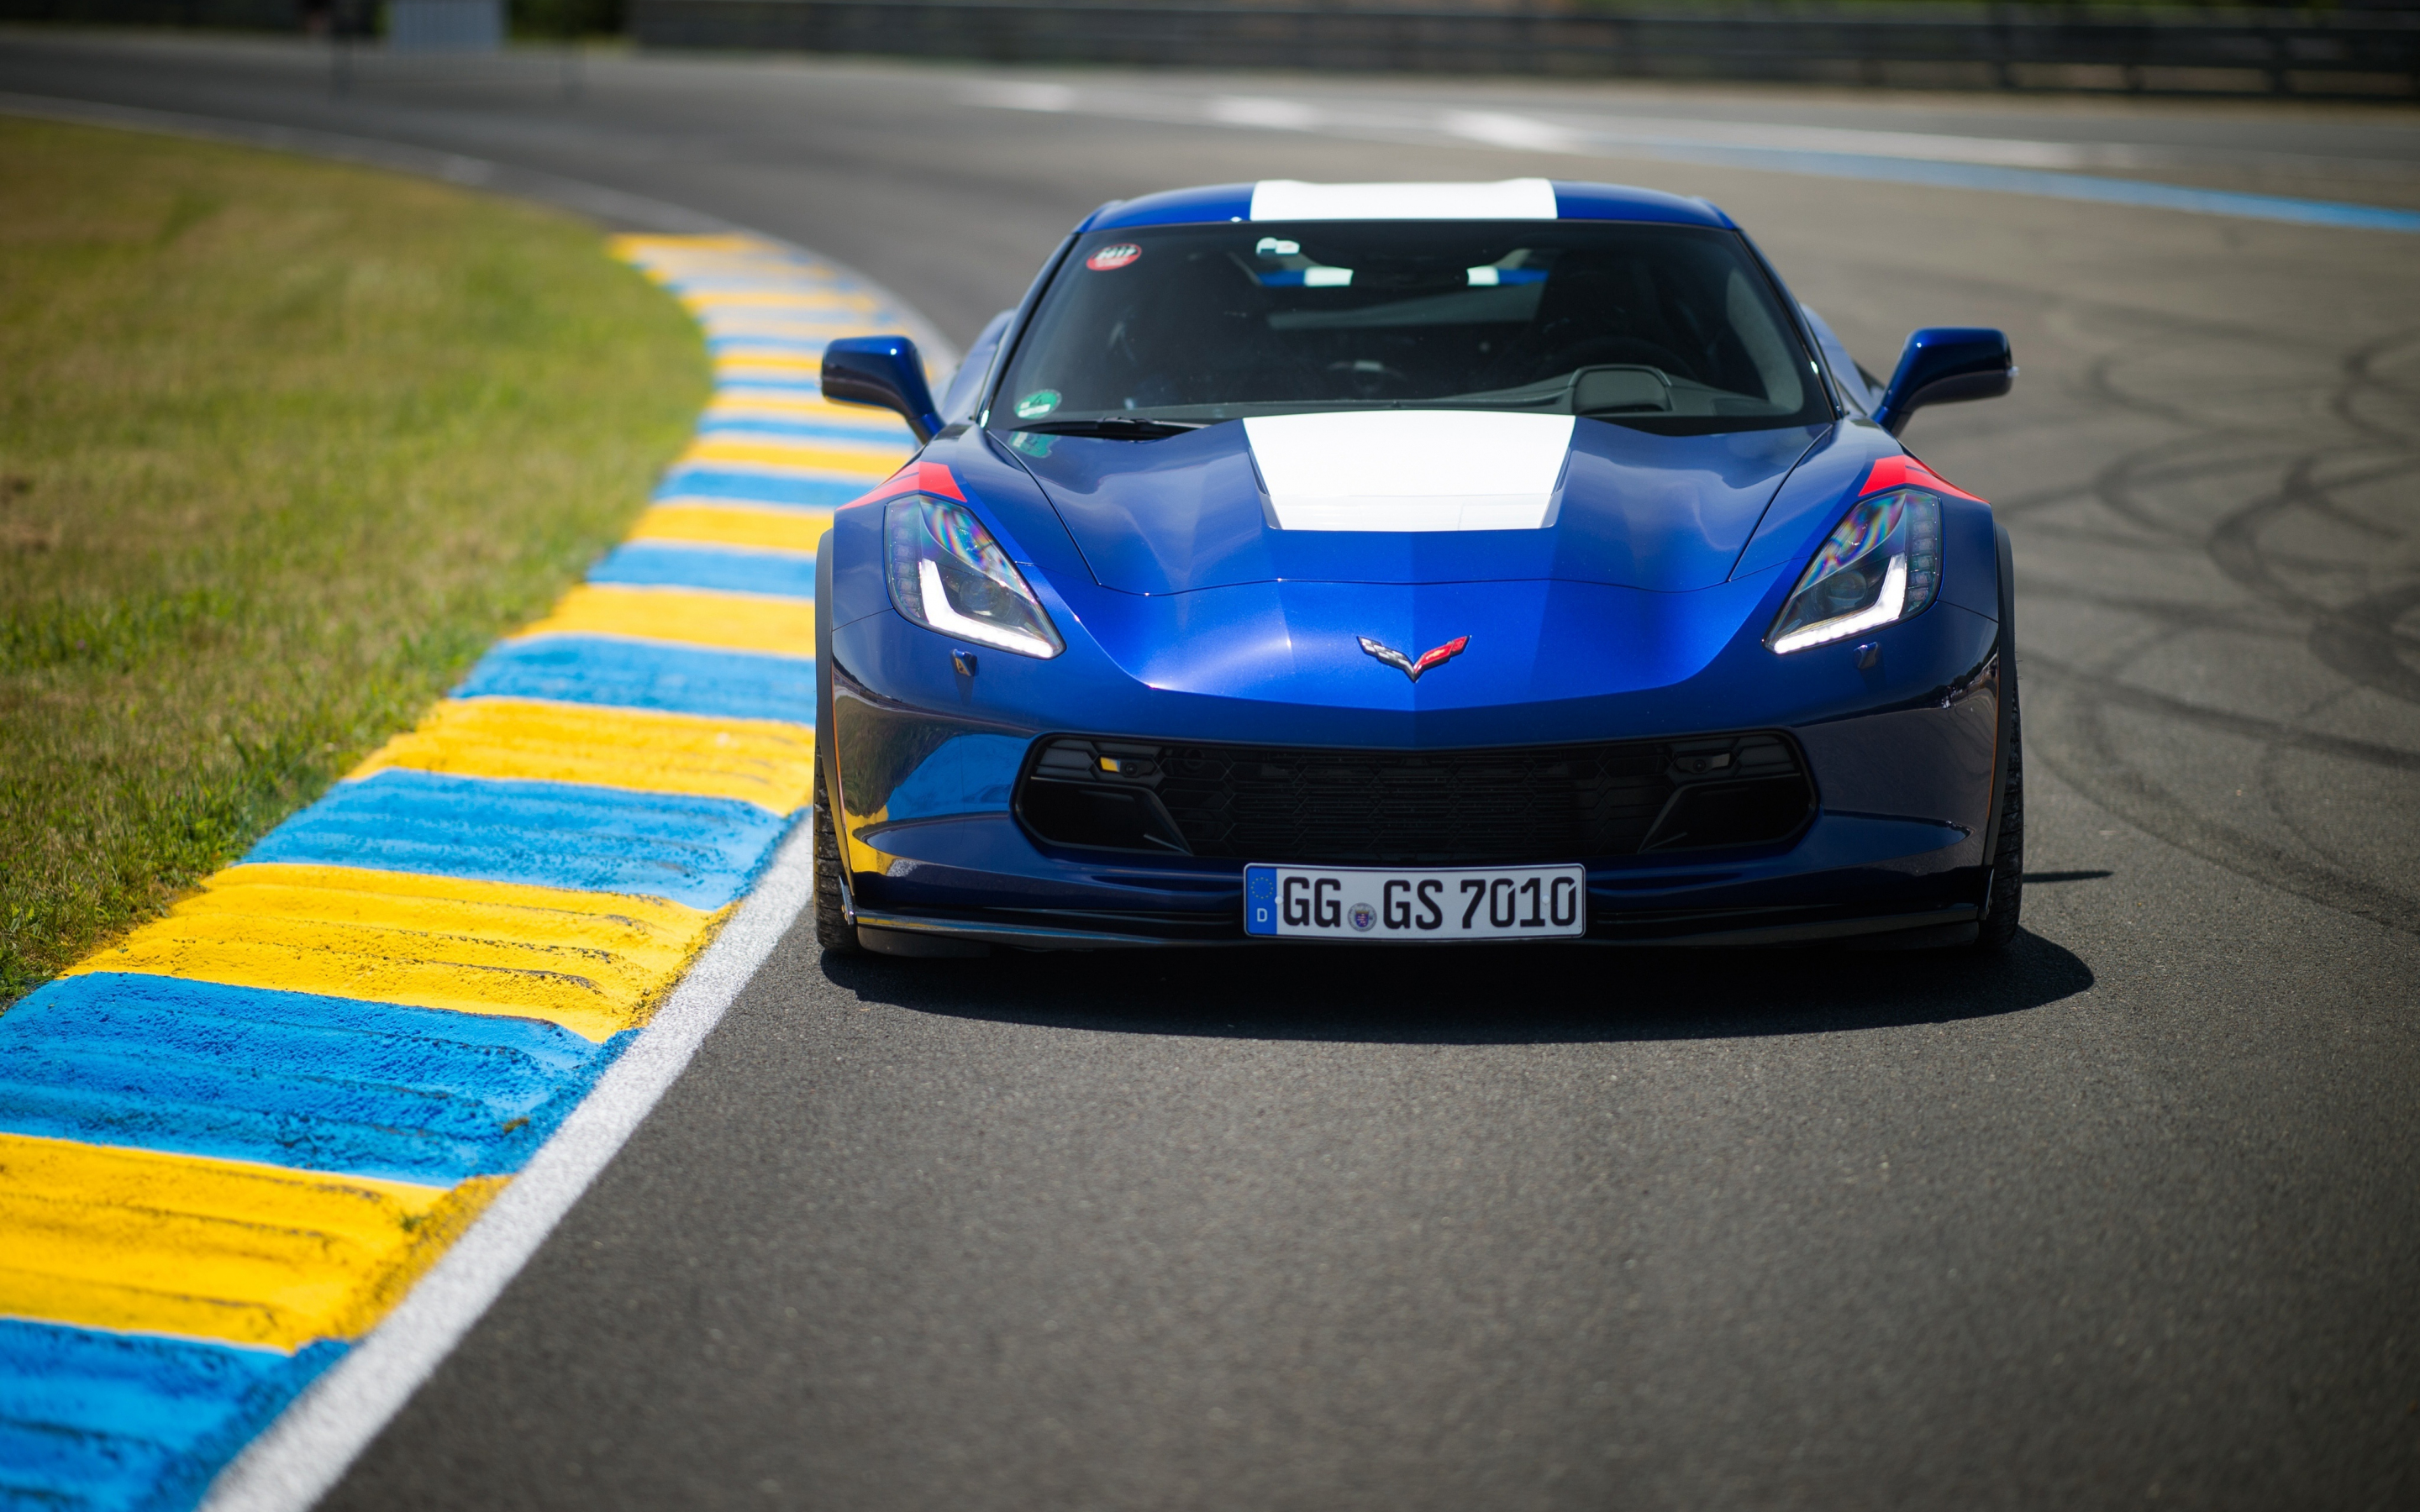 On road, blue, Chevrolet Corvette C7, 2880x1800 wallpaper